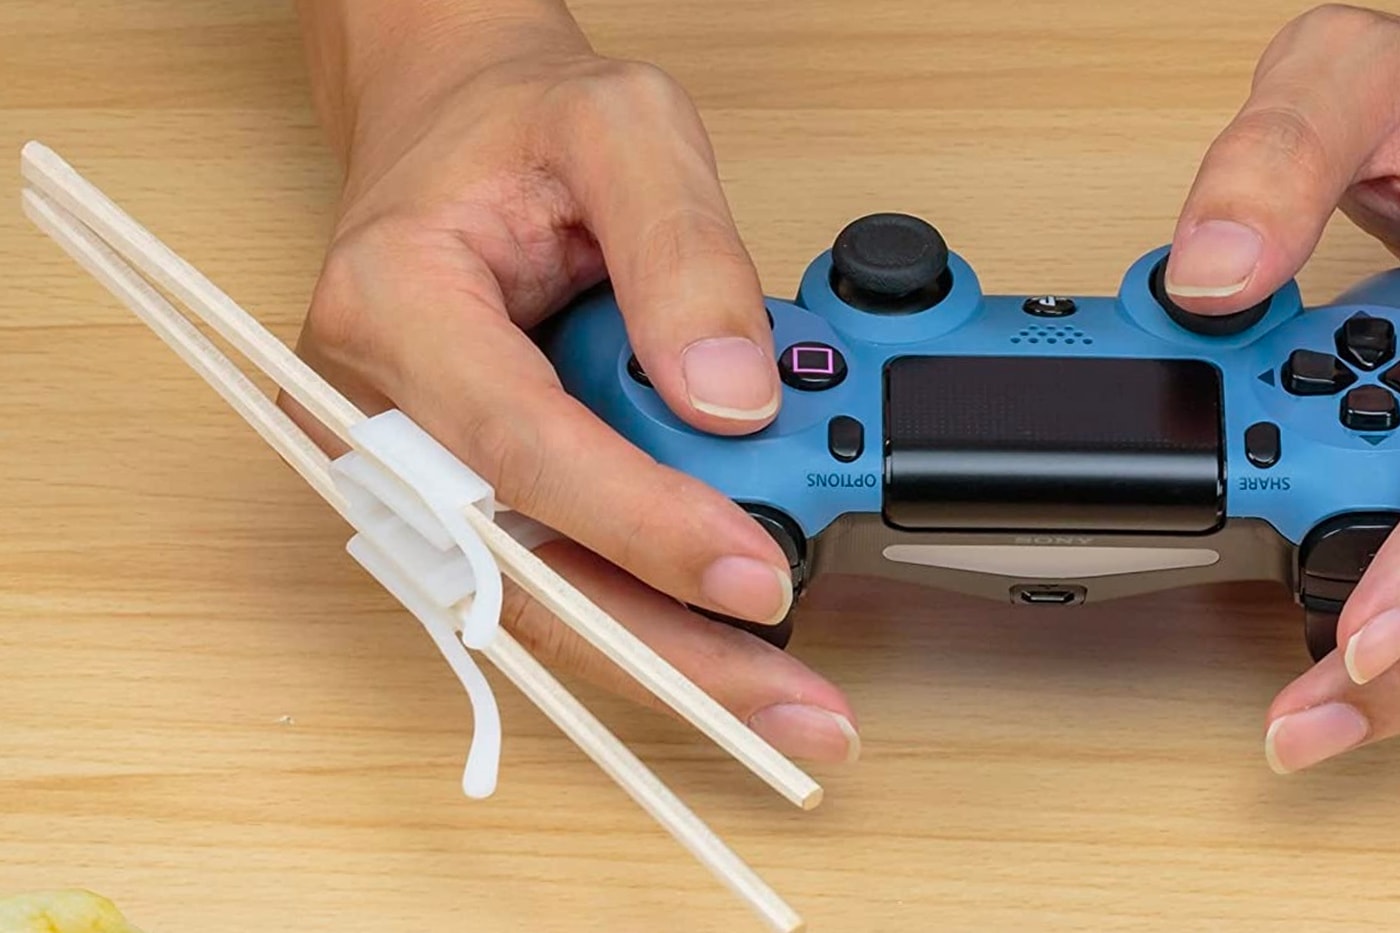 日本品牌 B’full 正式推出「电玩适用」筷子配件